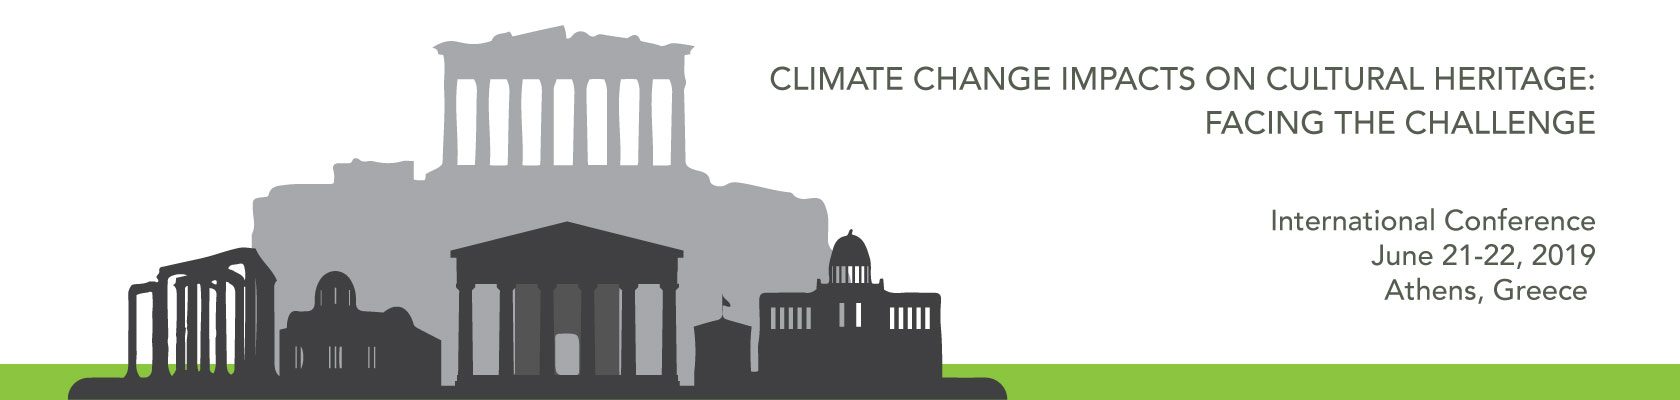 Î‘Ï€Î¿Ï„Î­Î»ÎµÏƒÎ¼Î± ÎµÎ¹ÎºÏŒÎ½Î±Ï‚ Î³Î¹Î± Global conference on climate change impact on cultural heritage in Athens